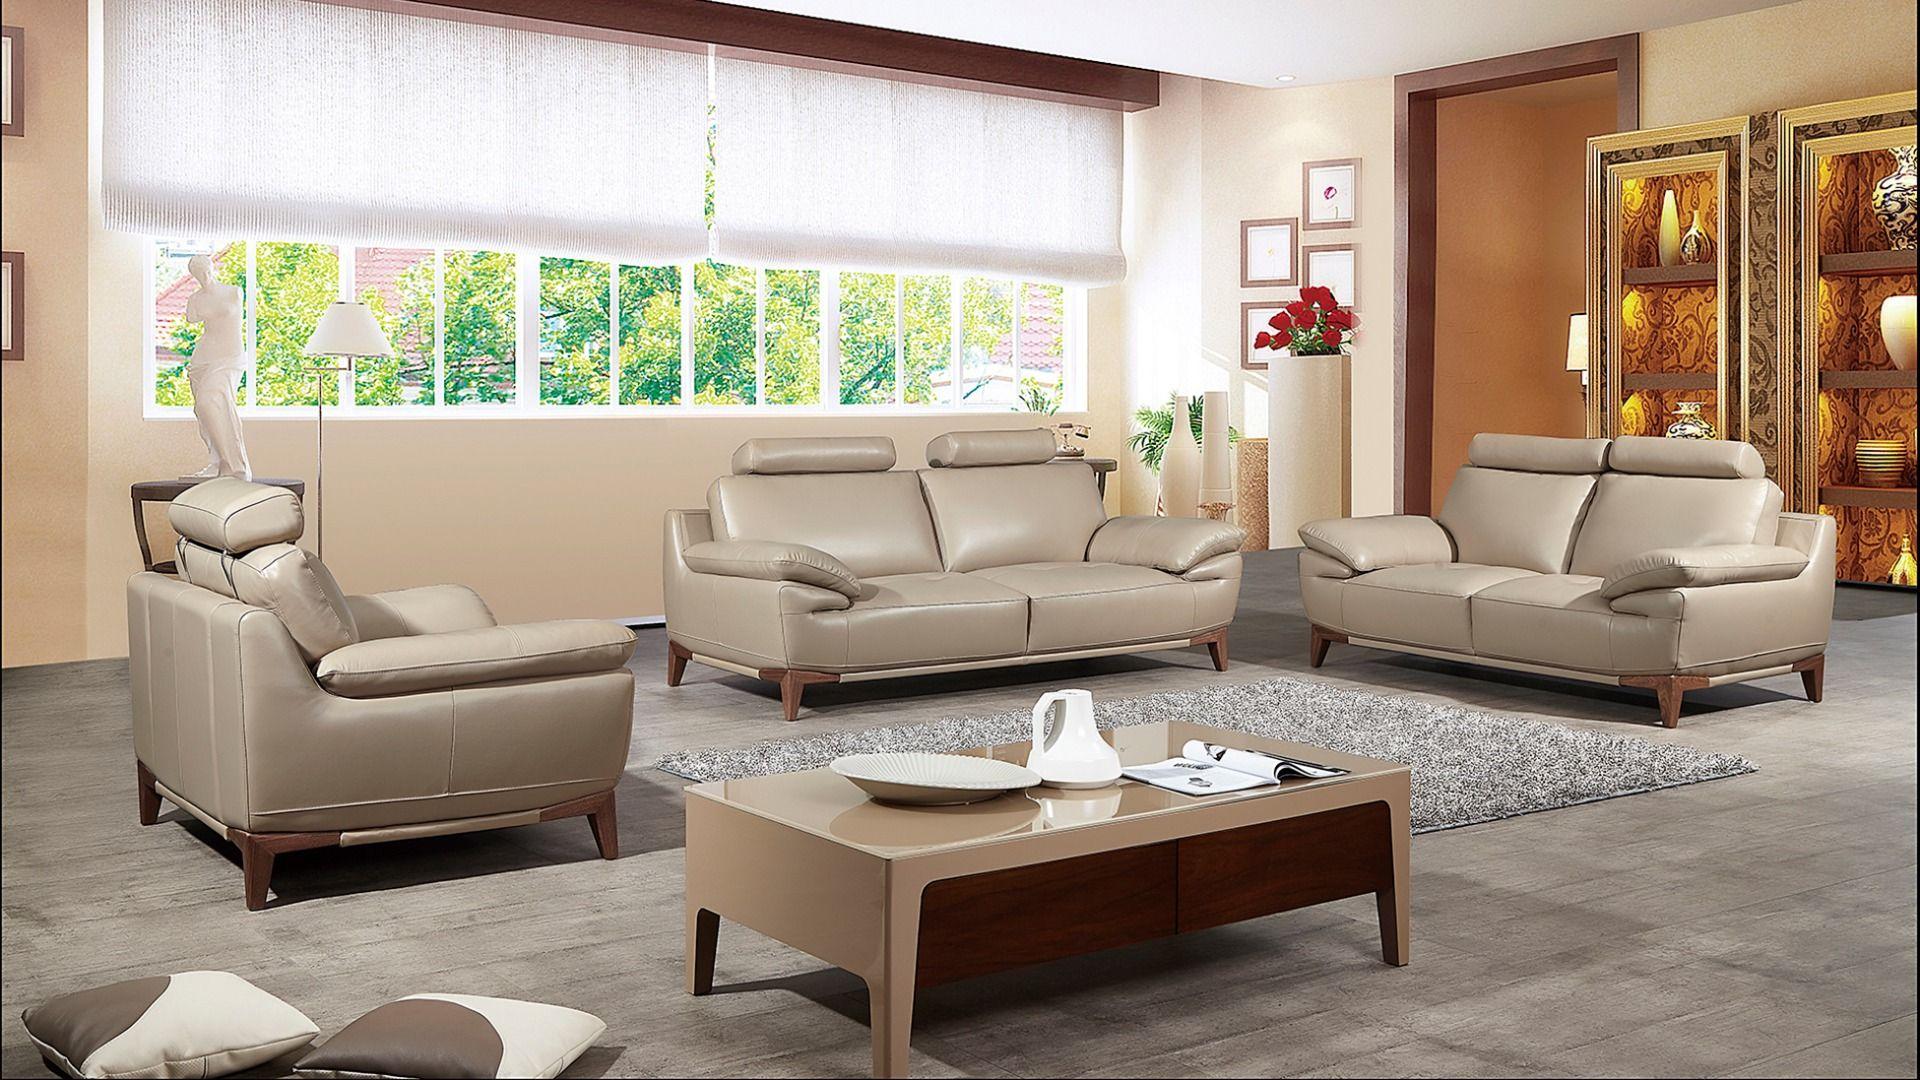 Contemporary, Modern Sofa Set EK028-TAN EK028-TAN -Set-3 in Tan Top grain leather